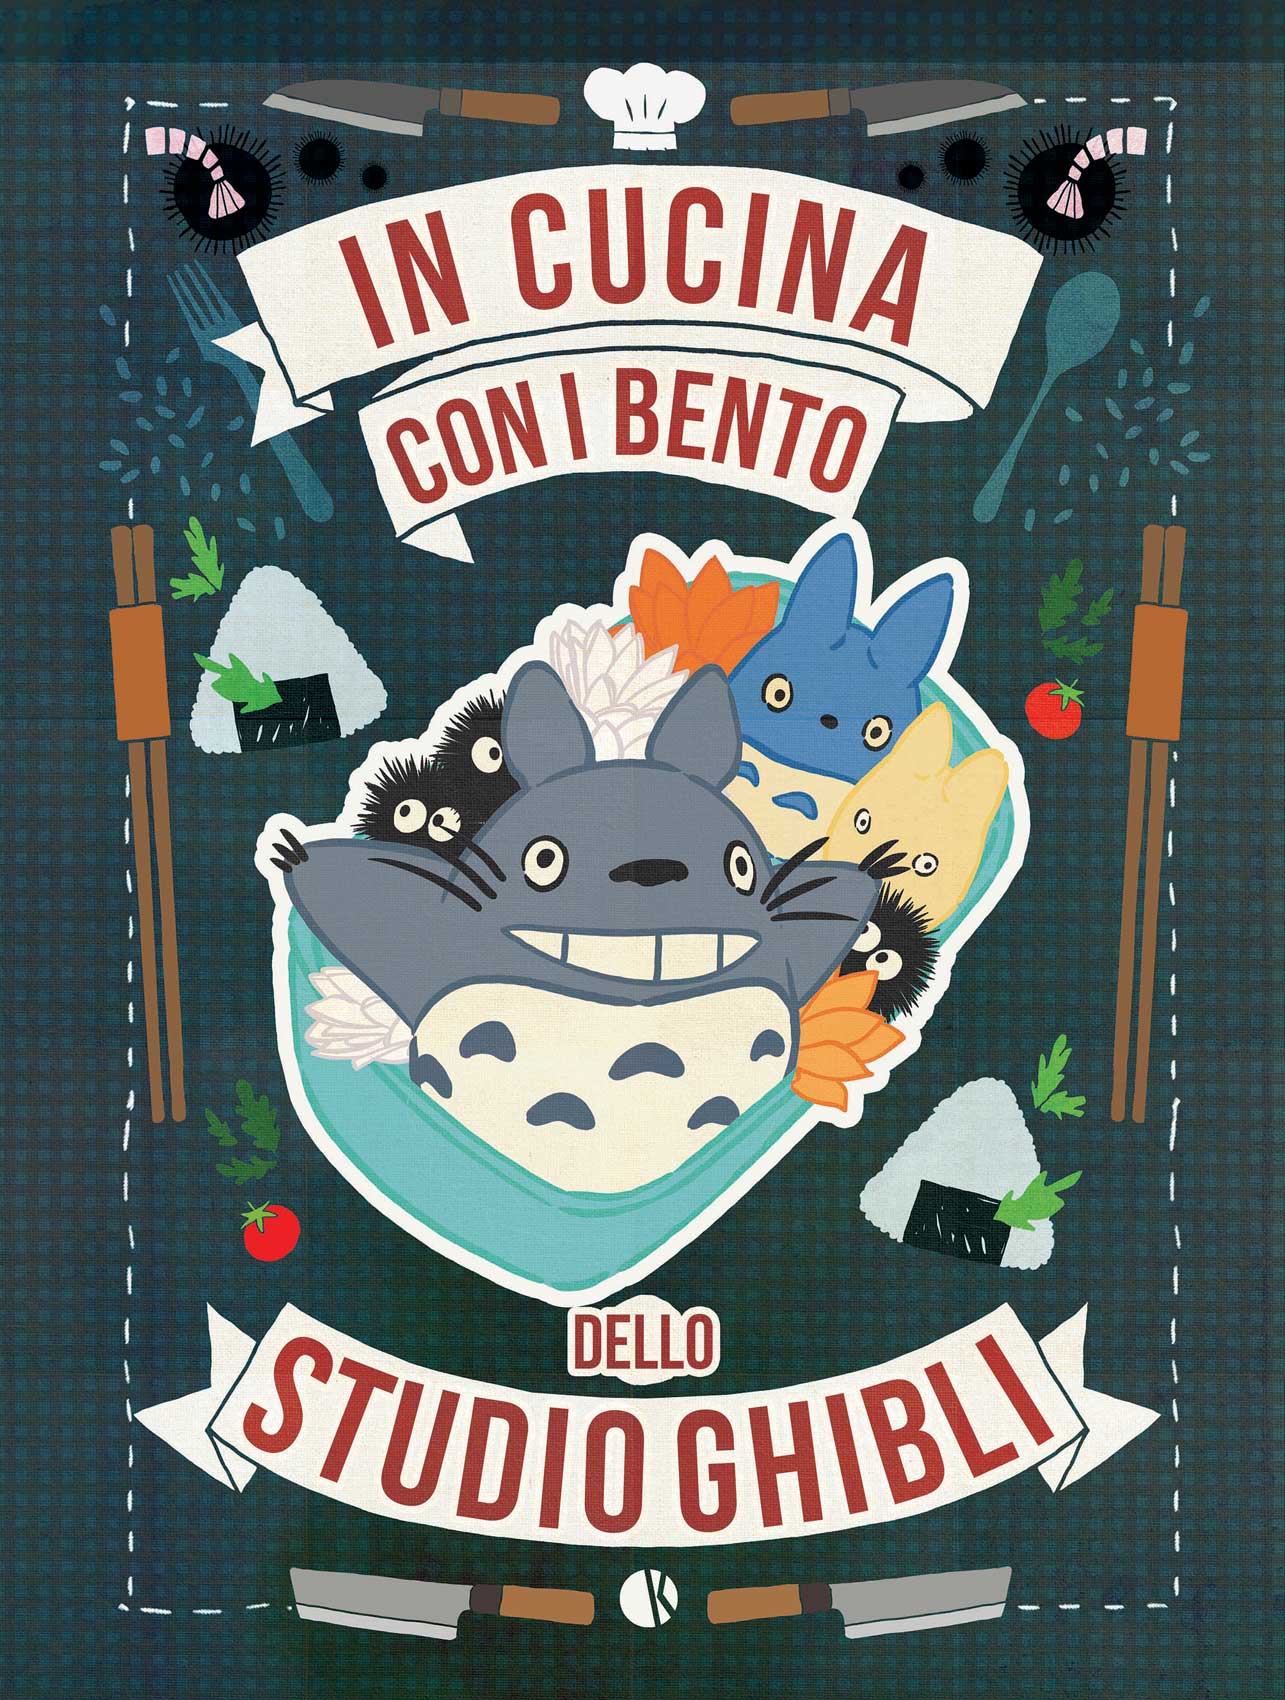 In Cucina con i Bento dello Studio Ghibli - Volume Unico - Kappalab -  Italiano - MyComics